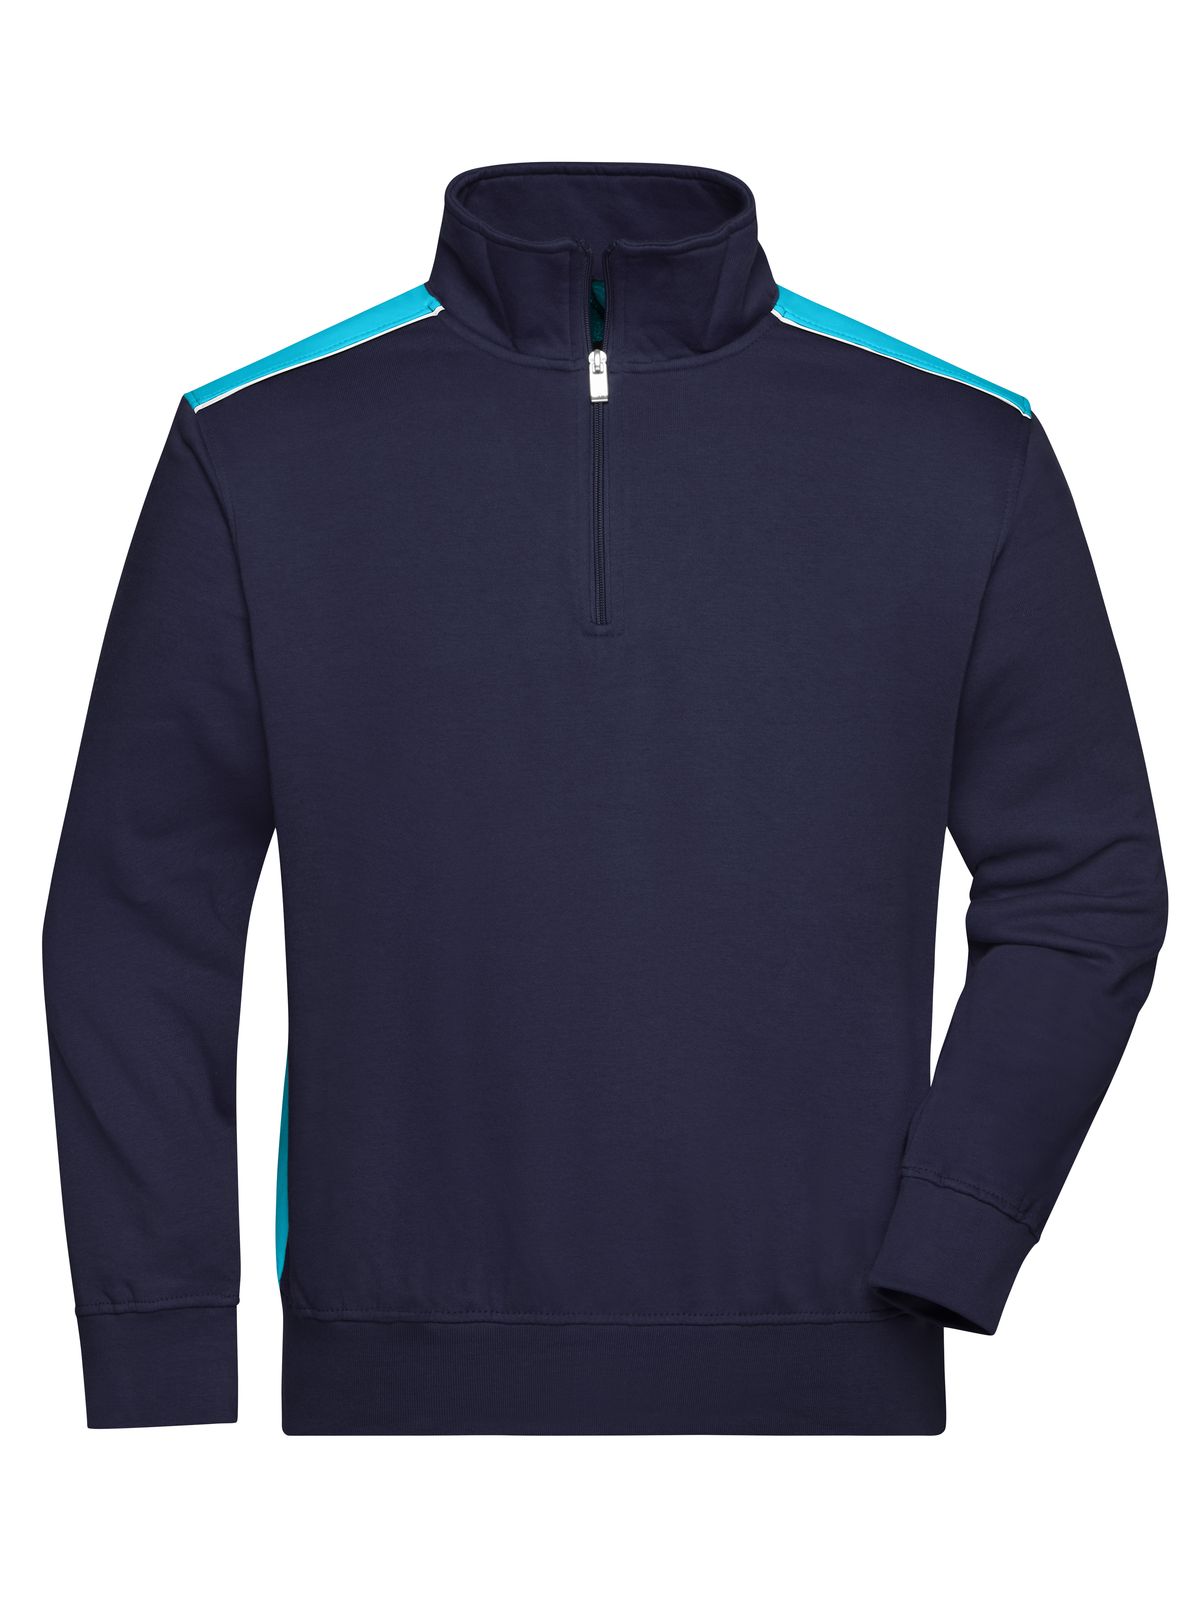 workwear-half-zip-sweat-color-navy-tourquoise.webp